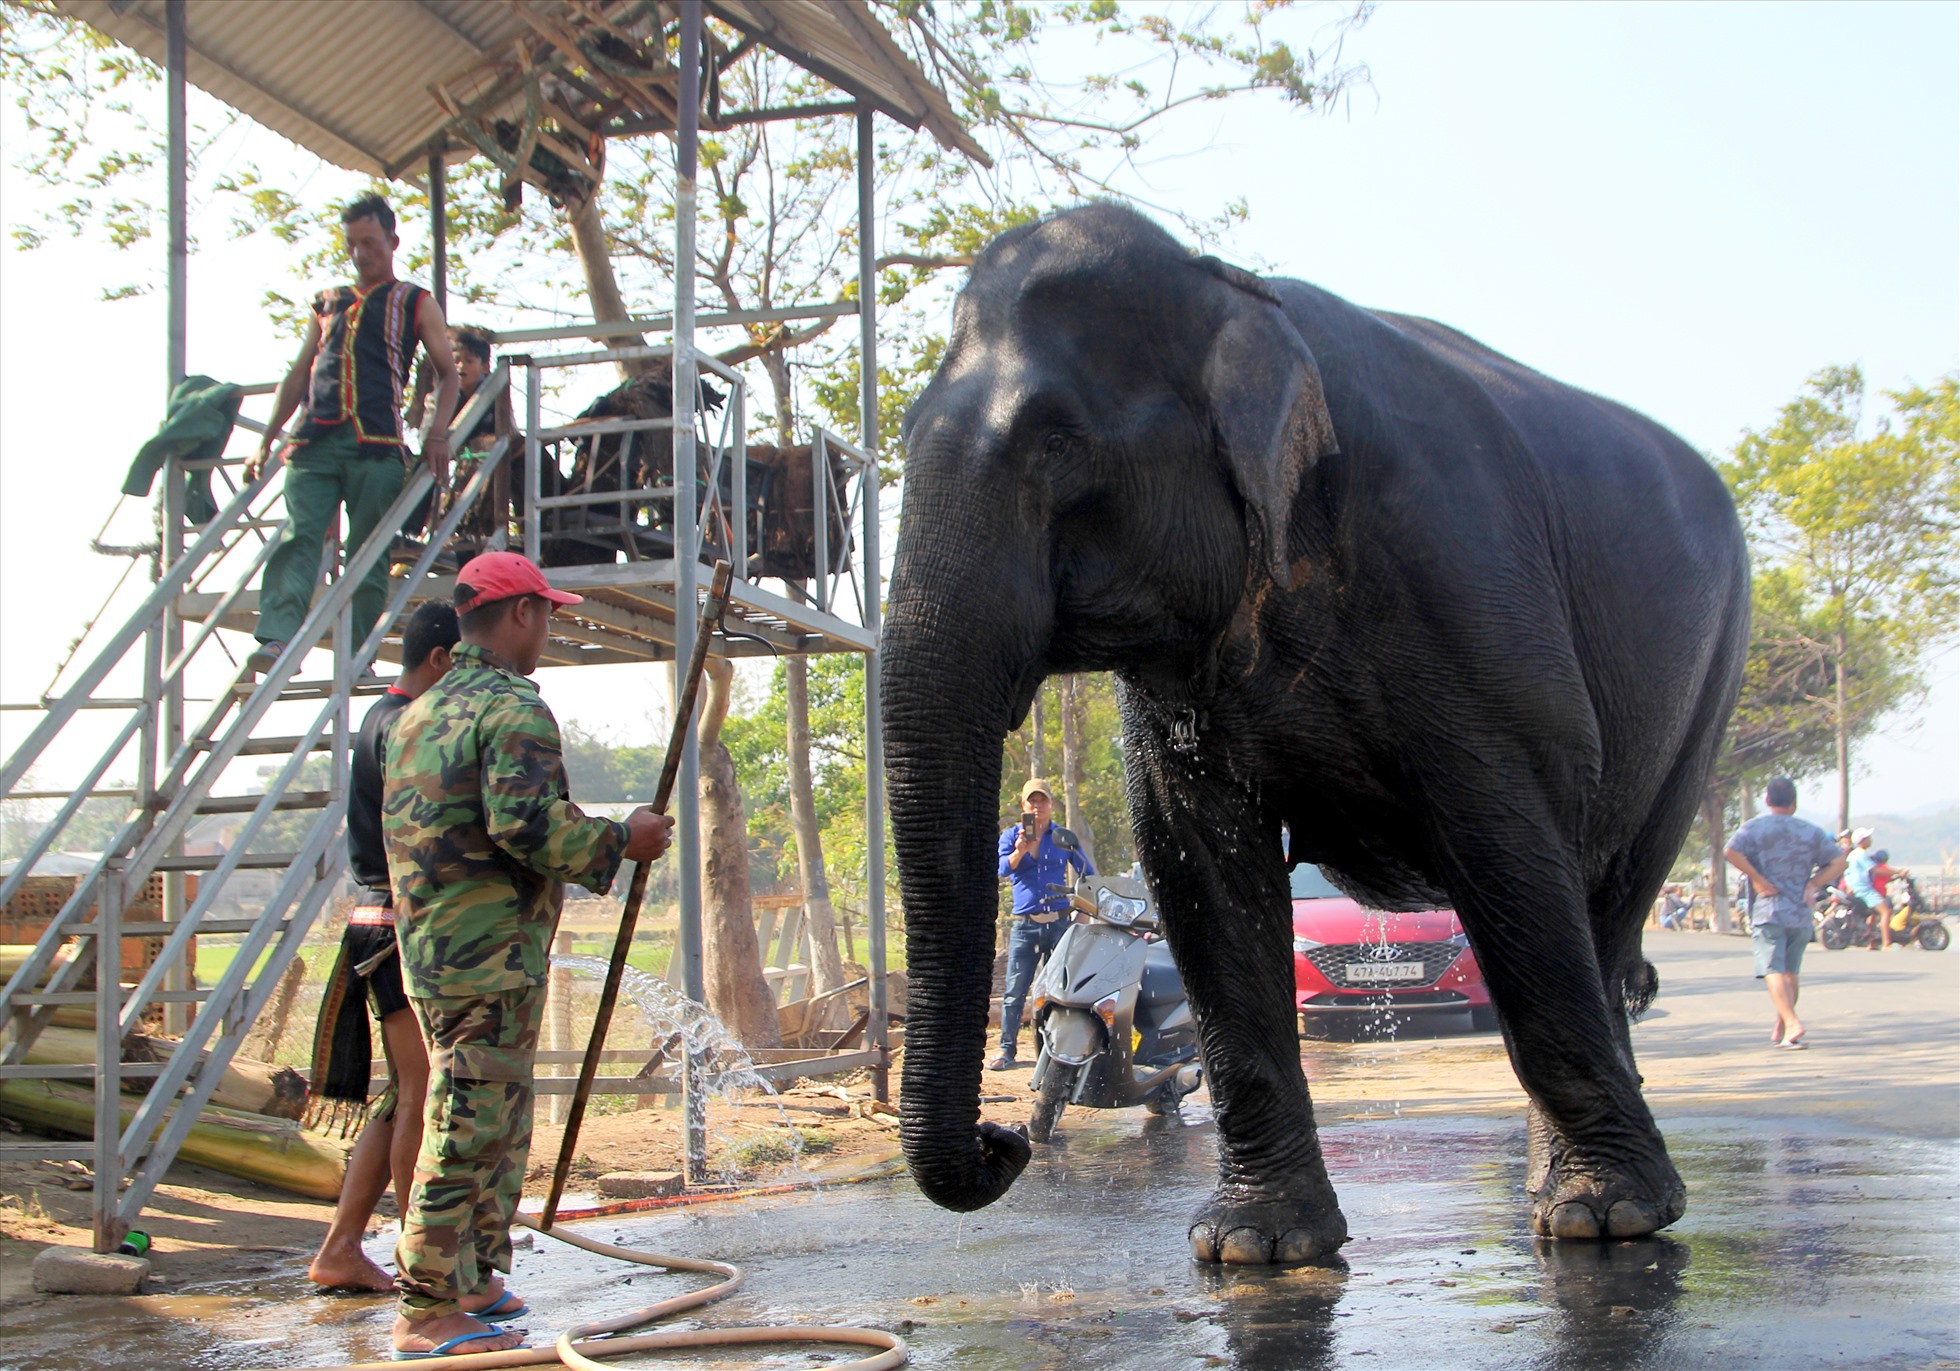 Sau khi được thưởng thức no nê các món ngon, voi được nài voi đưa về tắm rửa, nghỉ ngơi. Ảnh: Phan Tuấn